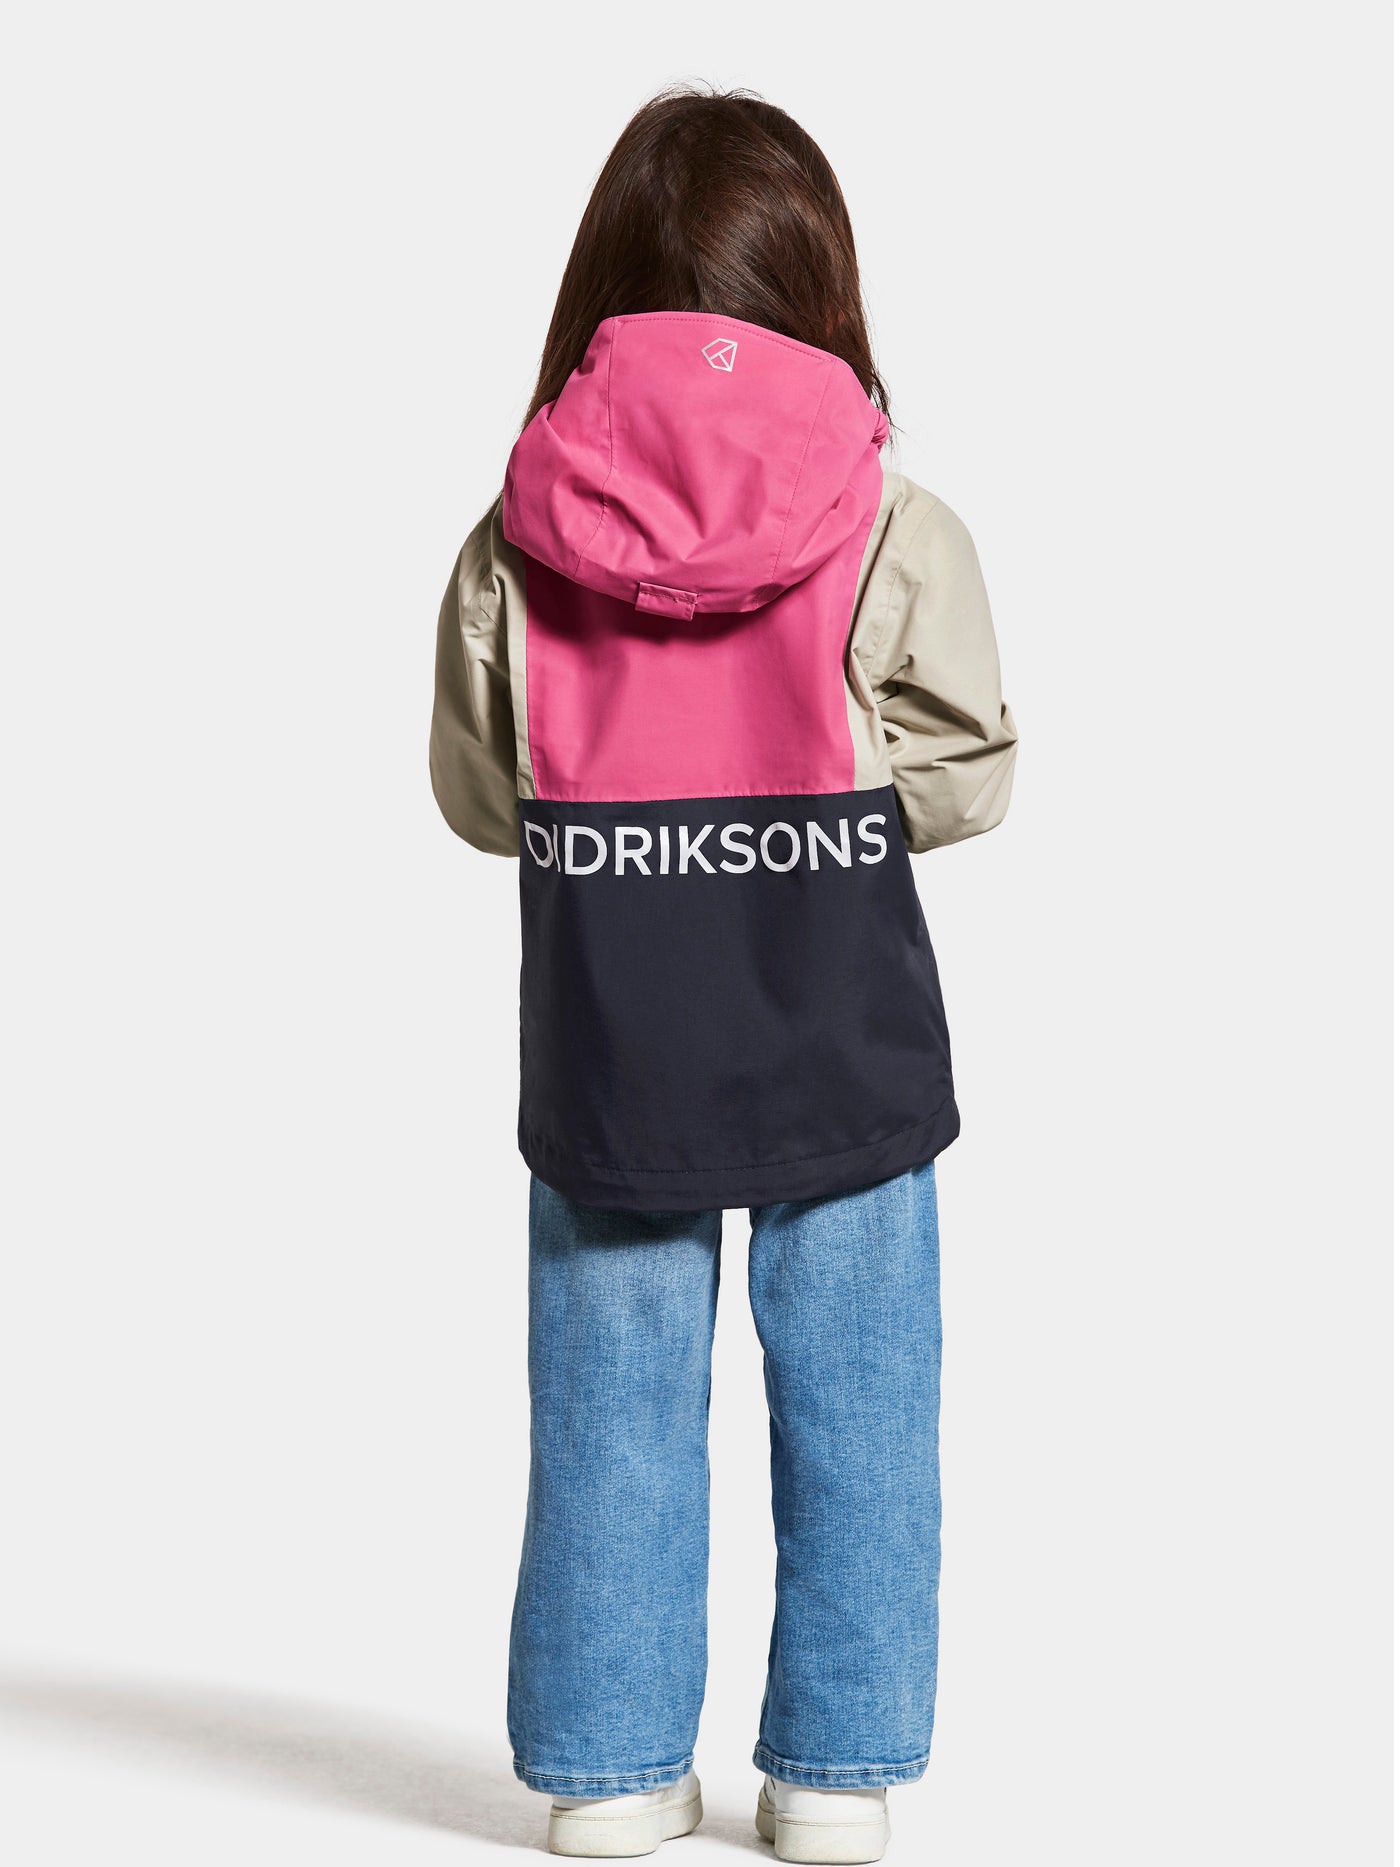 Tytön päällä Didriksonsin Block Lasten takki Sweet Pink värissä takaa kuvattuna